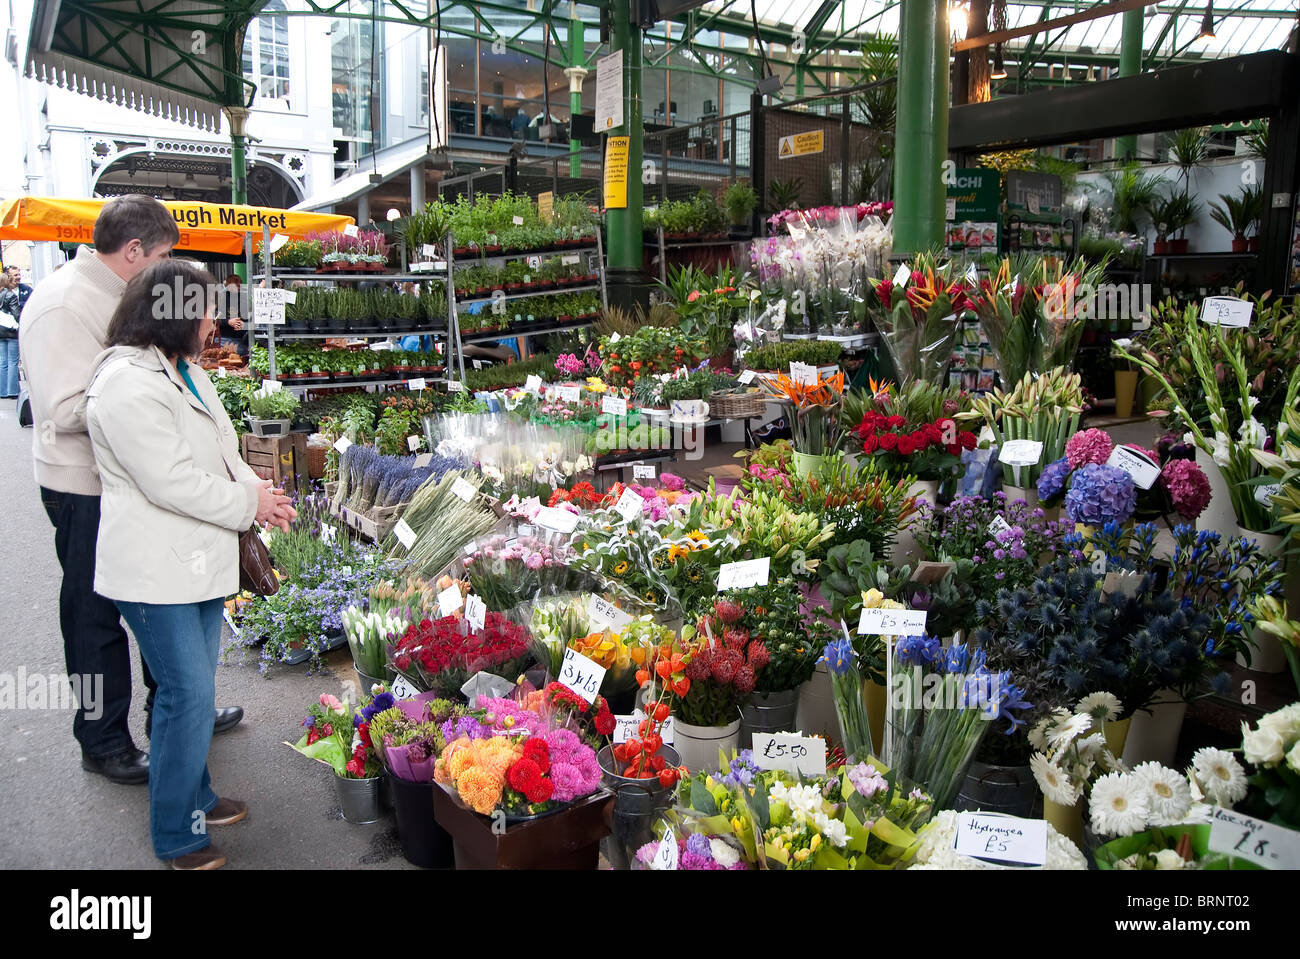 Londres, ROYAUME-UNI - OCTOBRE 2011 : le marché d'arrondissement, près du London Bridge l'un des plus grands et plus anciens marchés alimentaires de Londres Banque D'Images